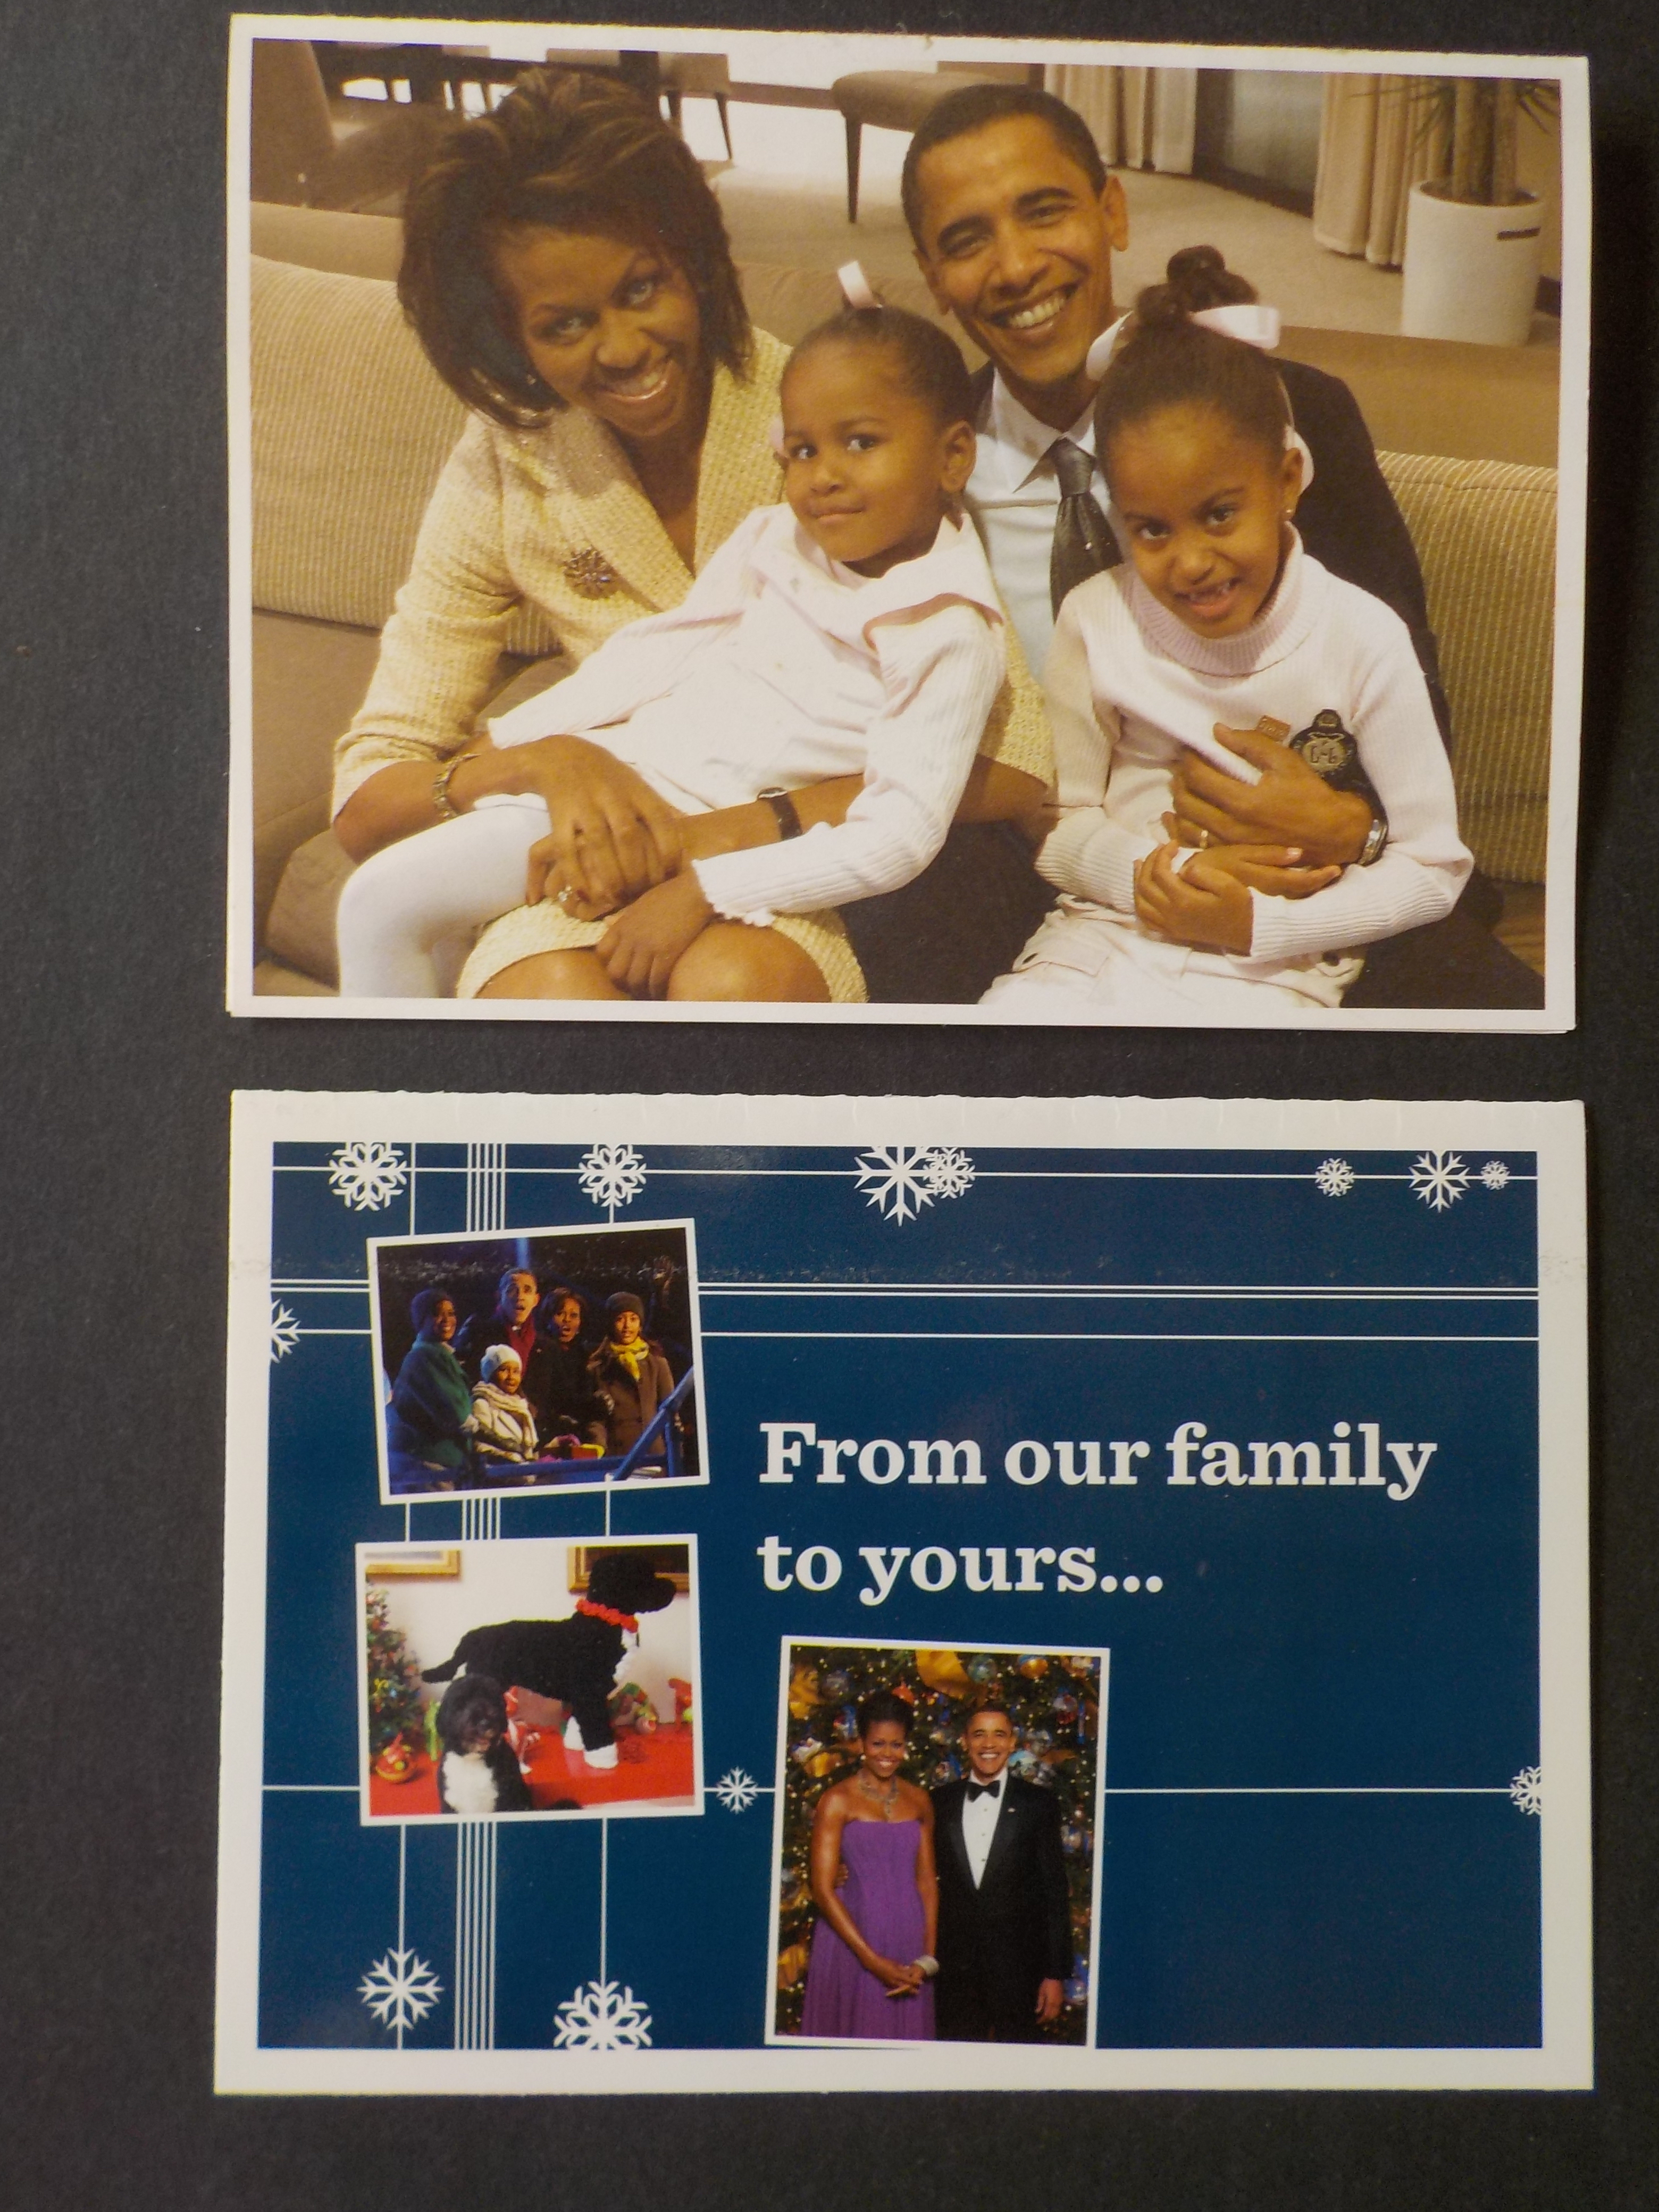 Obama family